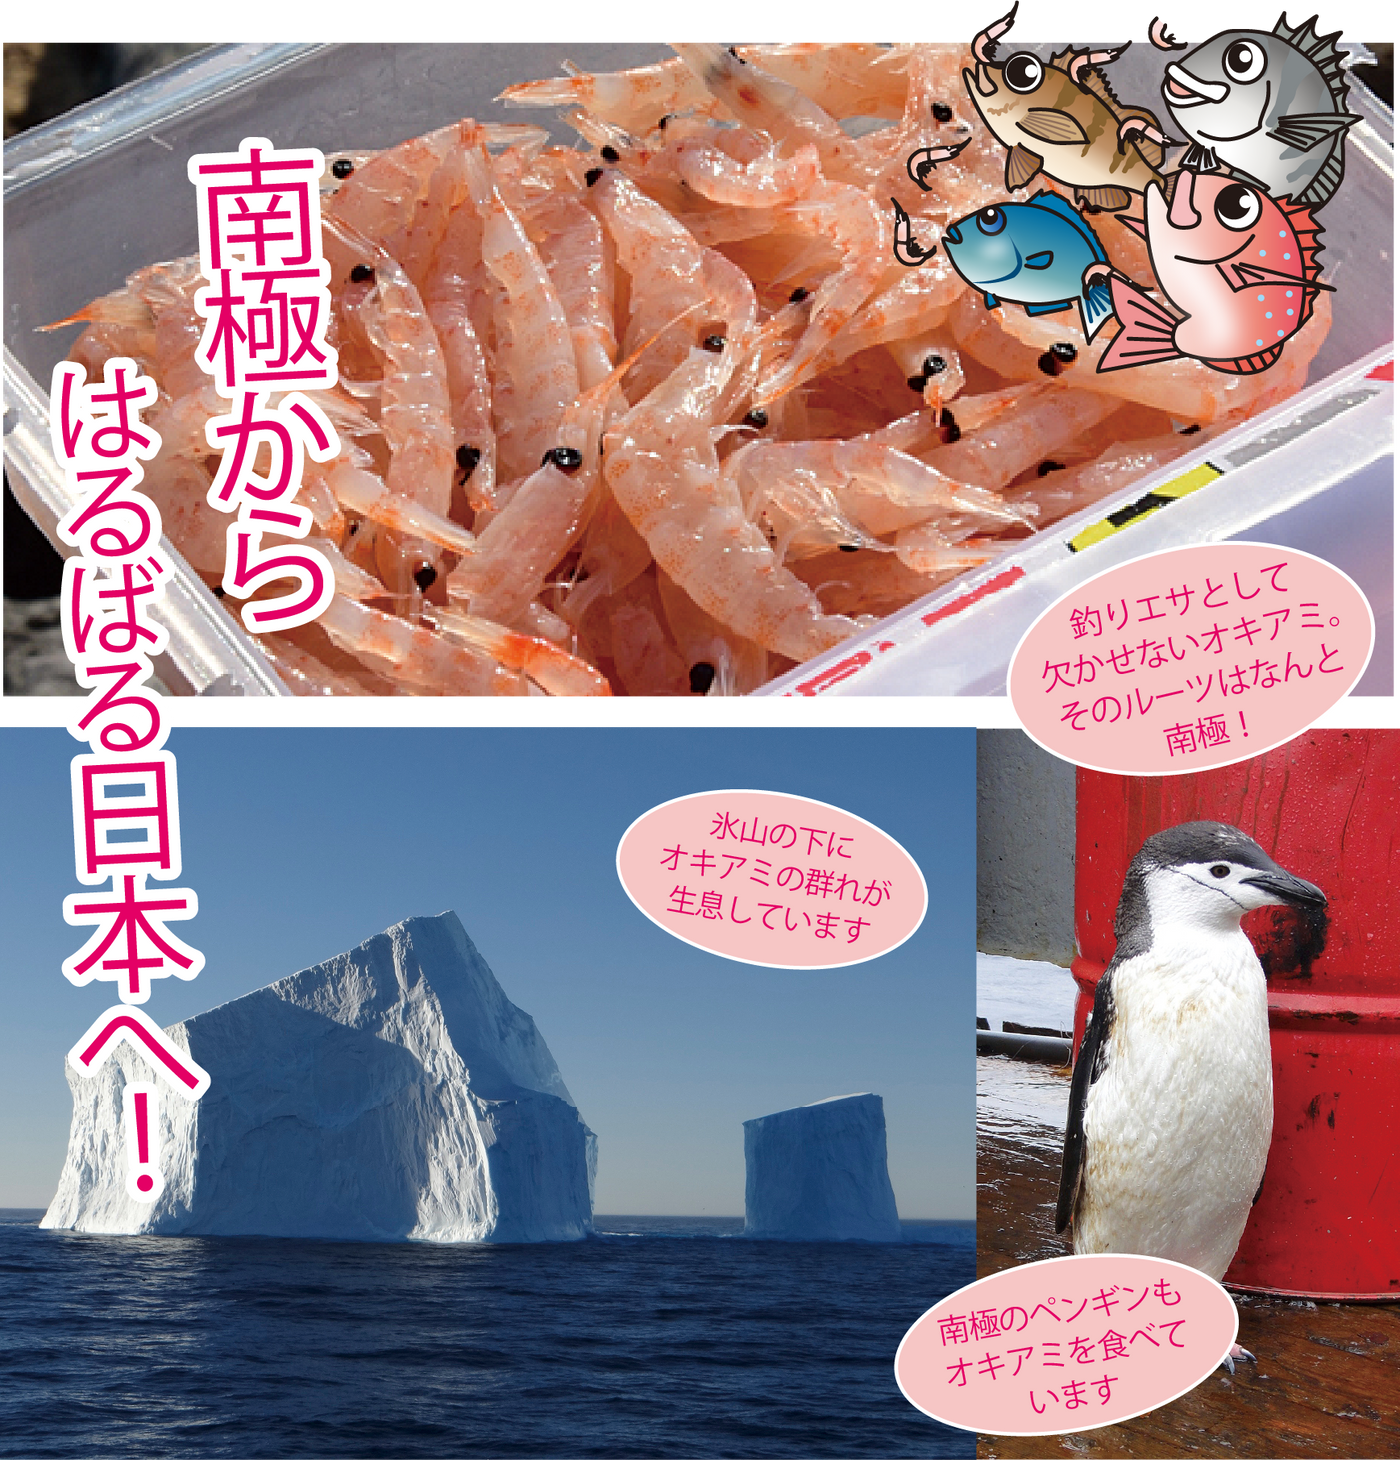 南極から、はるばる日本へ！釣り餌としては欠かせないオキアミ。そのルーツはなんと、南極。南極ペンギンもオキアミを食べています。氷山の下にオキアミが生息しています。